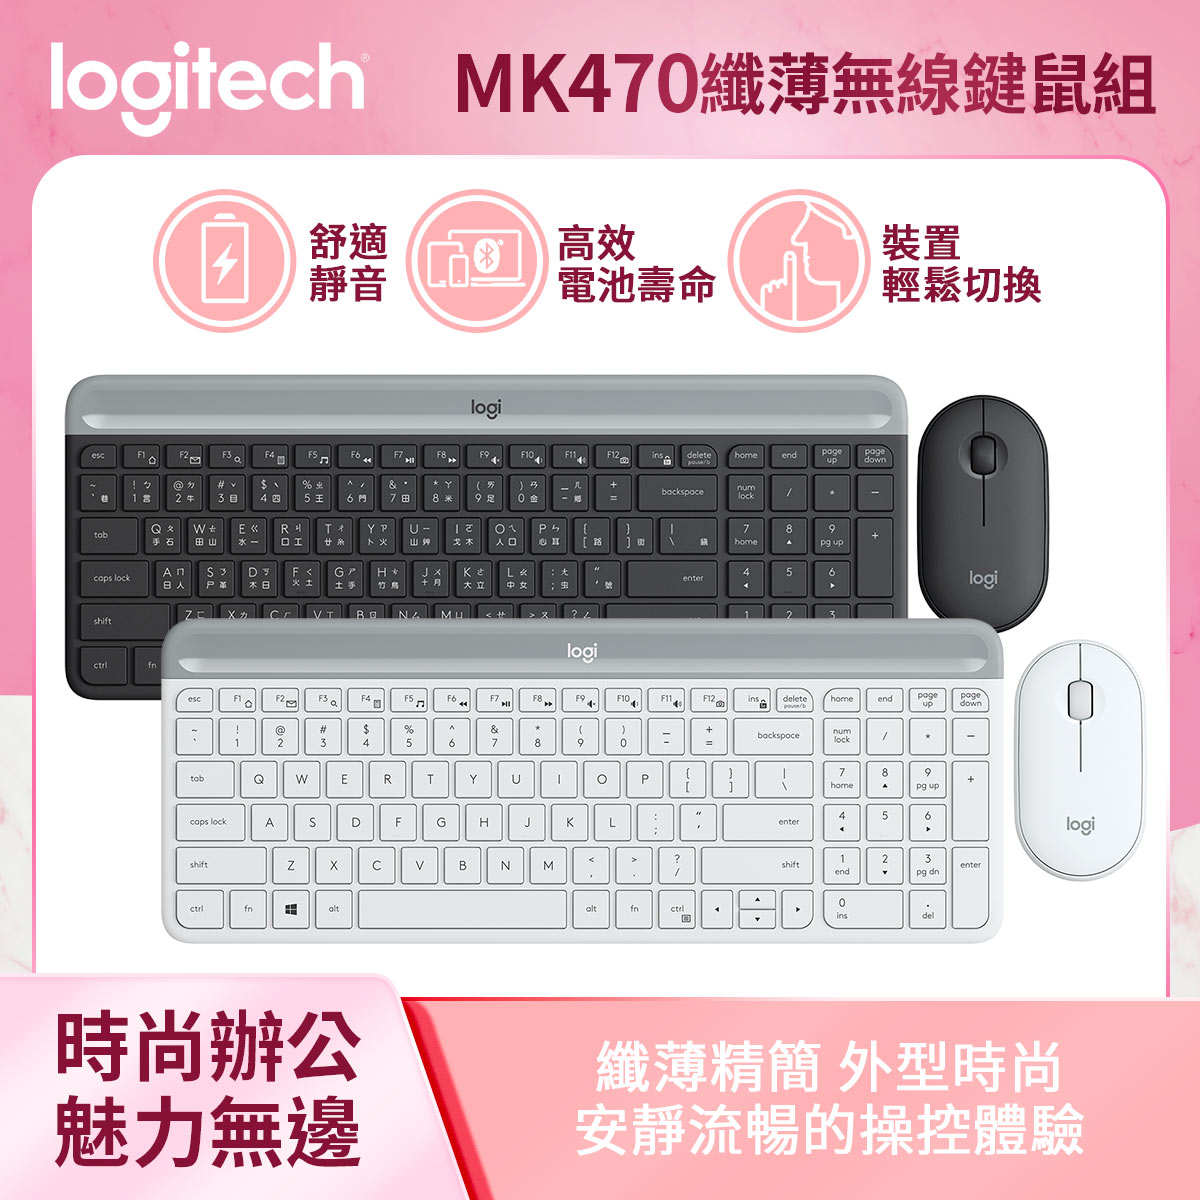 【澄名影音展場】Logitech 羅技 MK470 纖薄無線鍵鼠組(黑/白)